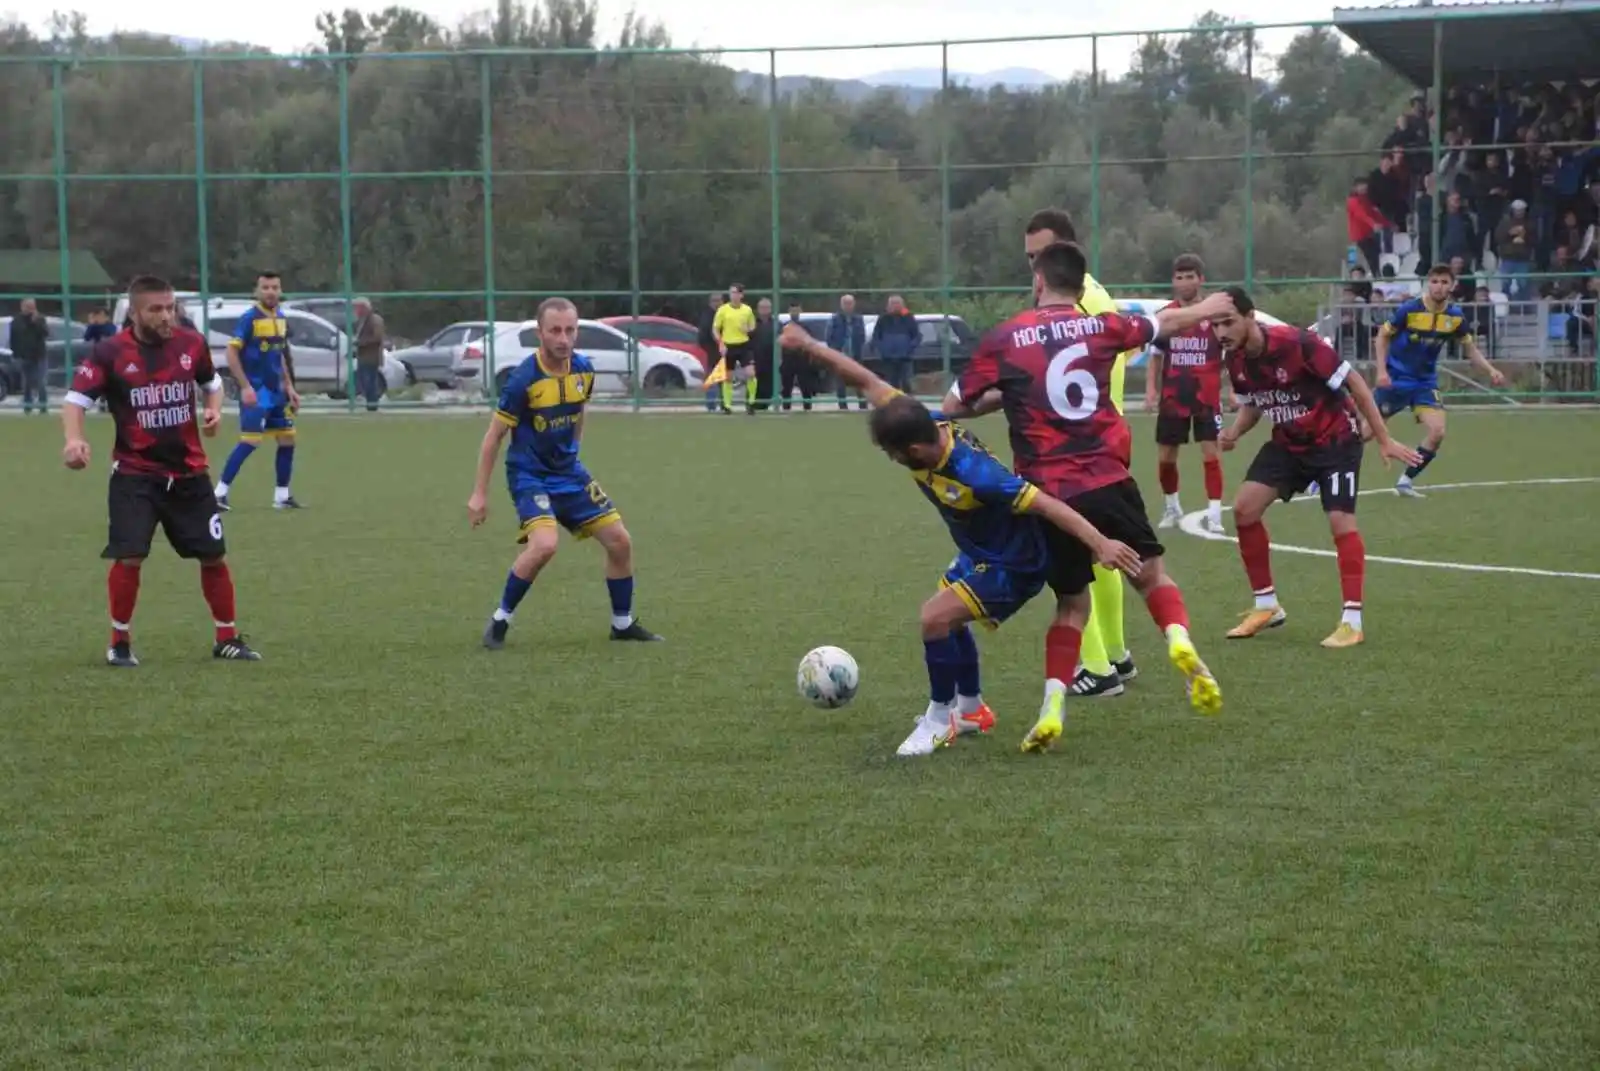 Çaycumaspor Sefercikspor karşısında 2-0’lık üstünlük sağladı
